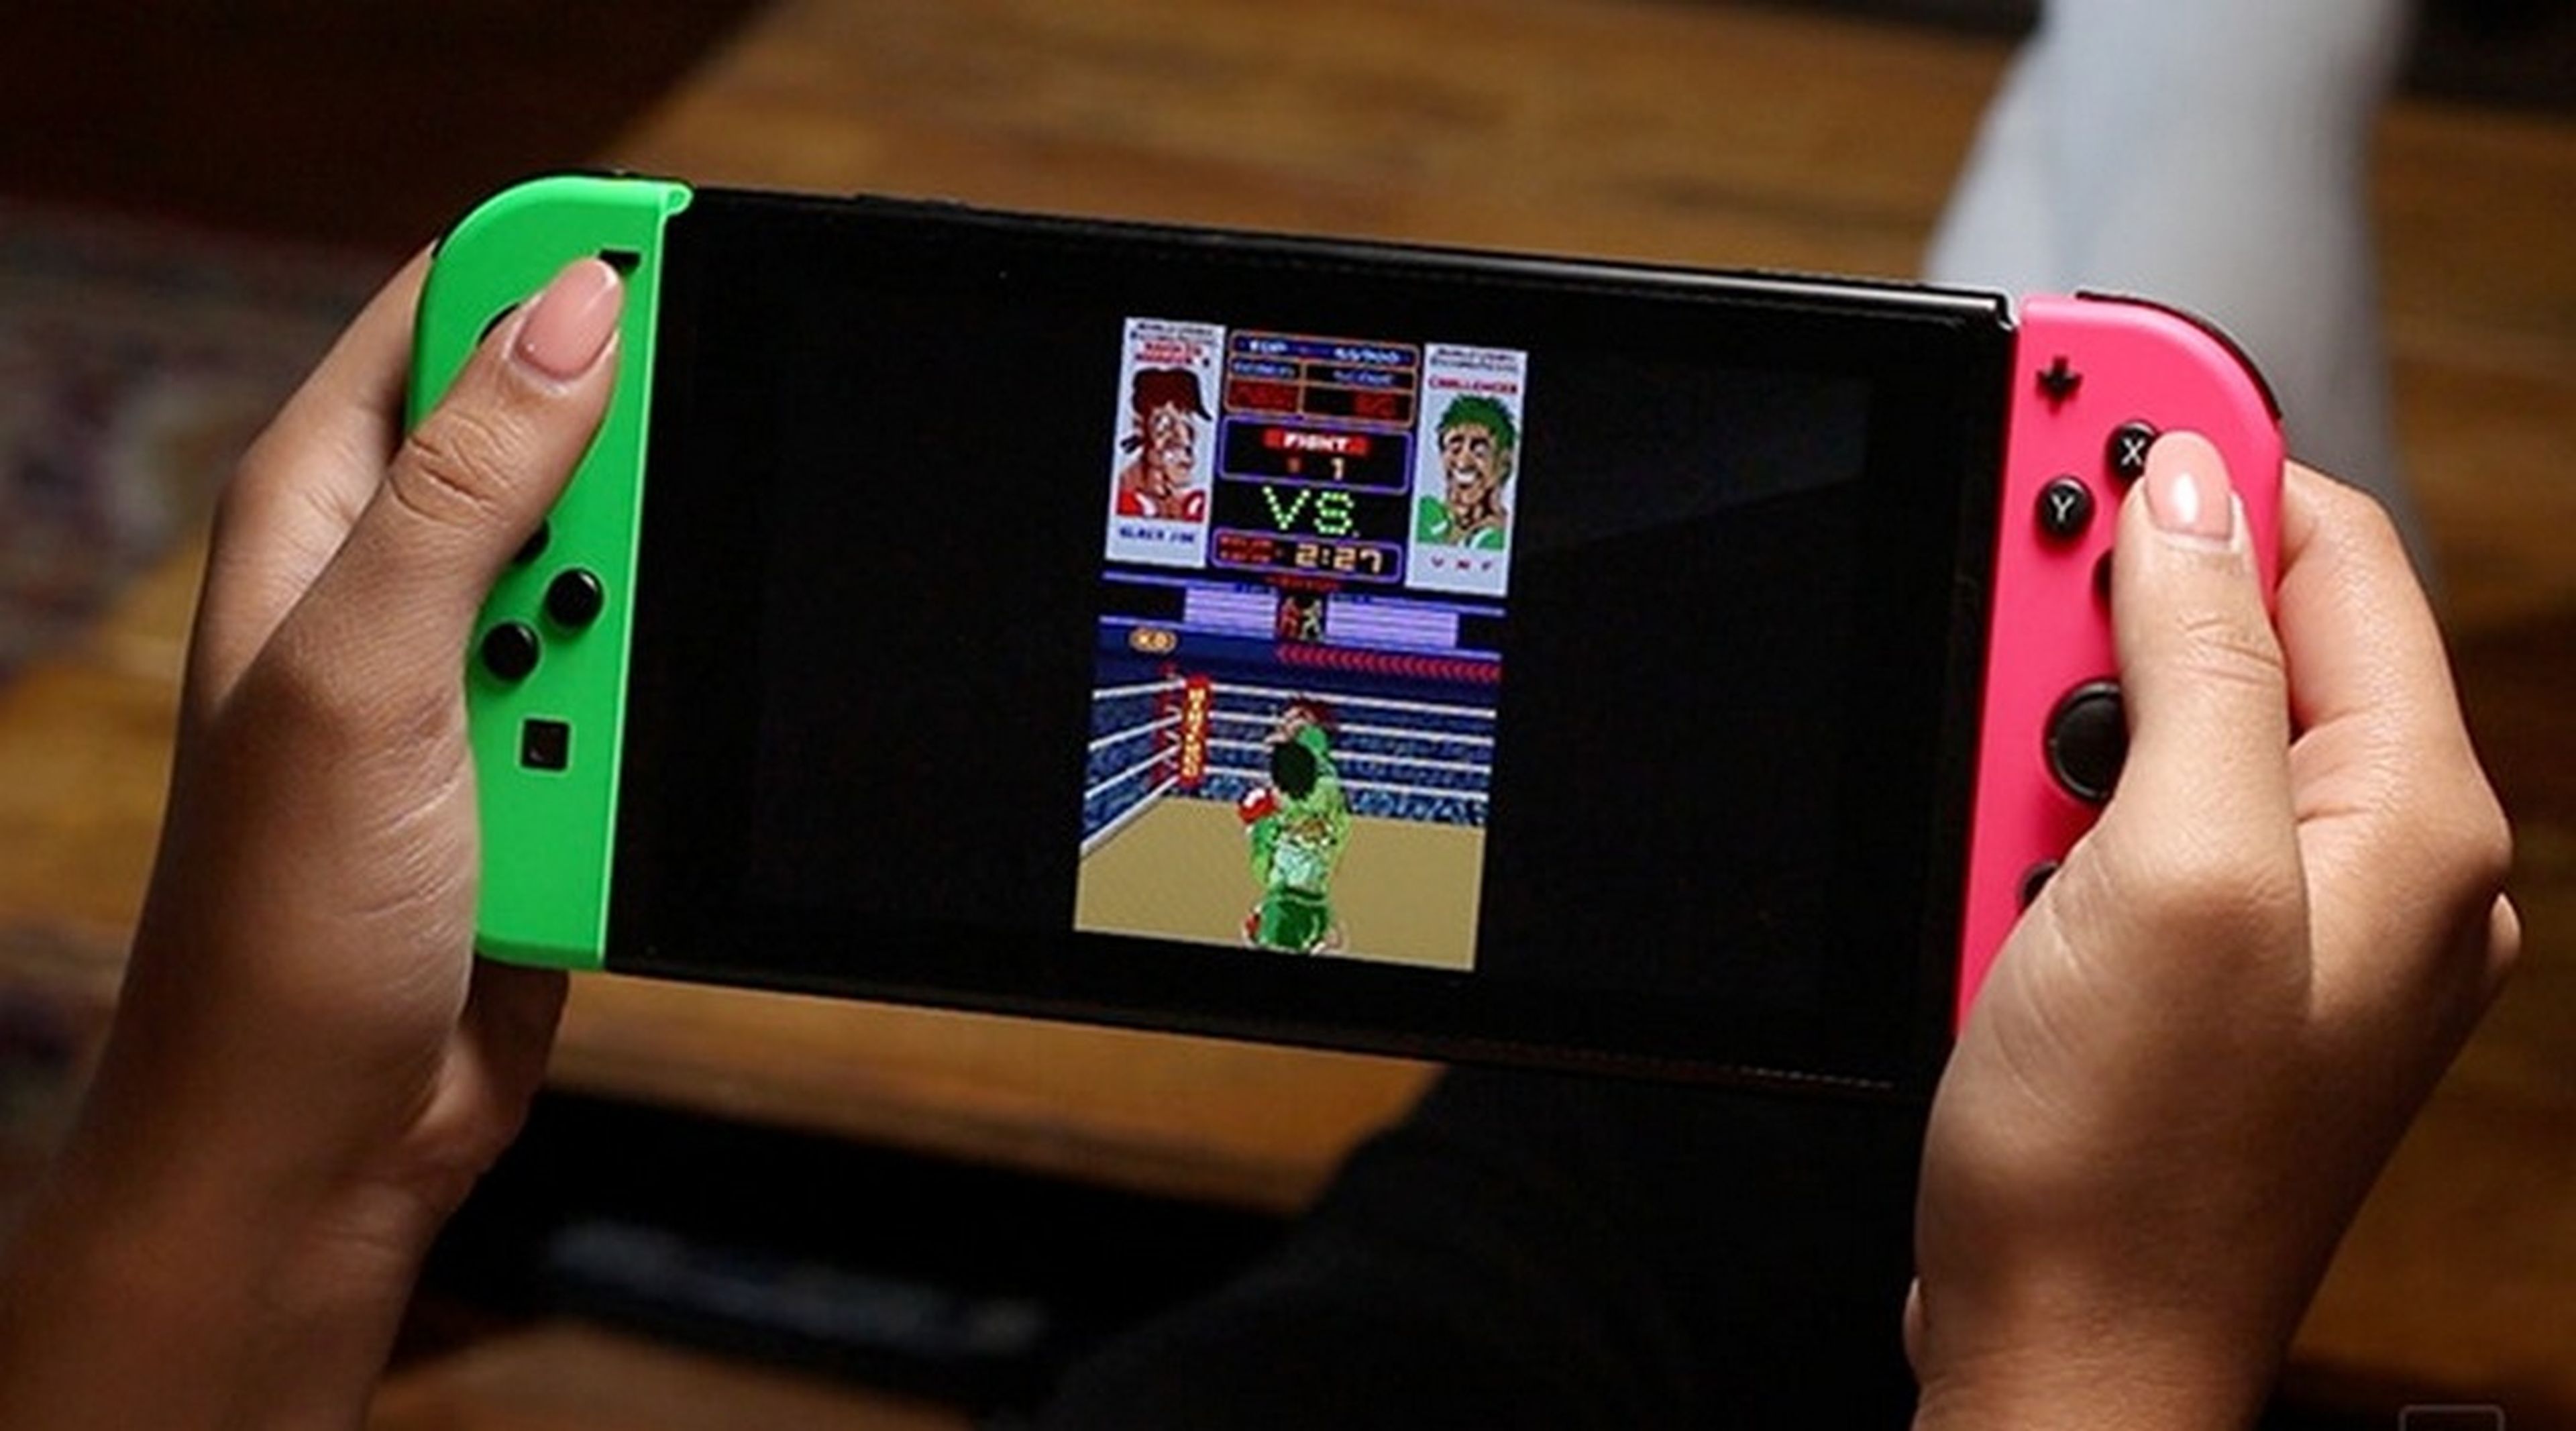 Flip Grip, juega con tu Nintendo Switch en vertical